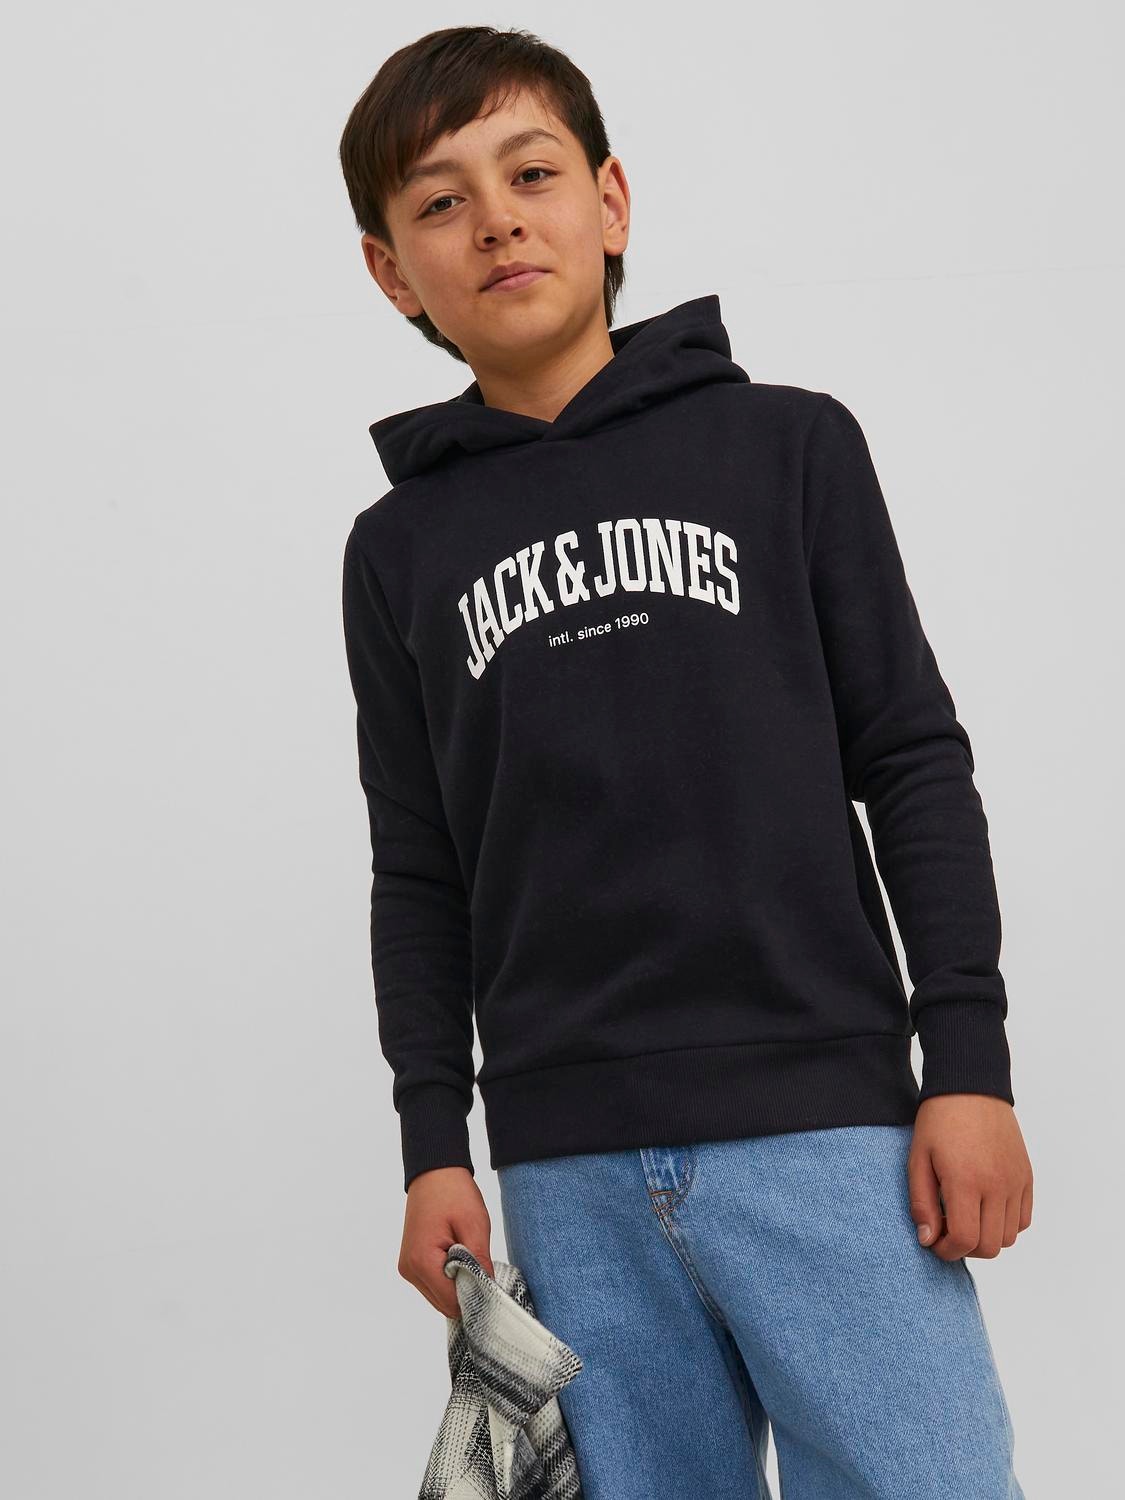 Jack & Jones Logo Hoodie For boys -Black - 12237401